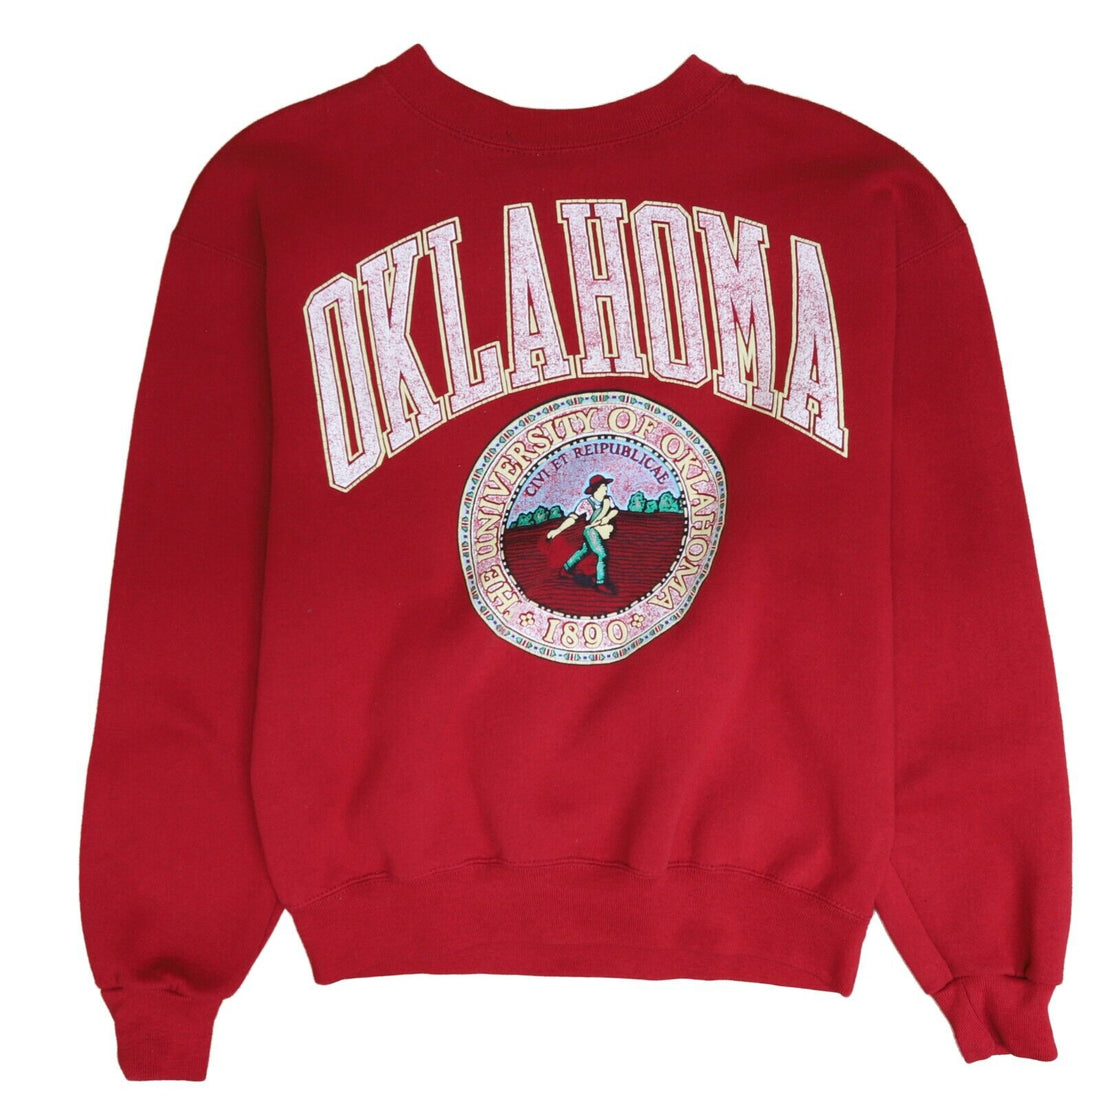 Vintage Oklahoma Sooners Sweatshirt Crewneck Size Large Red 90s NCAA